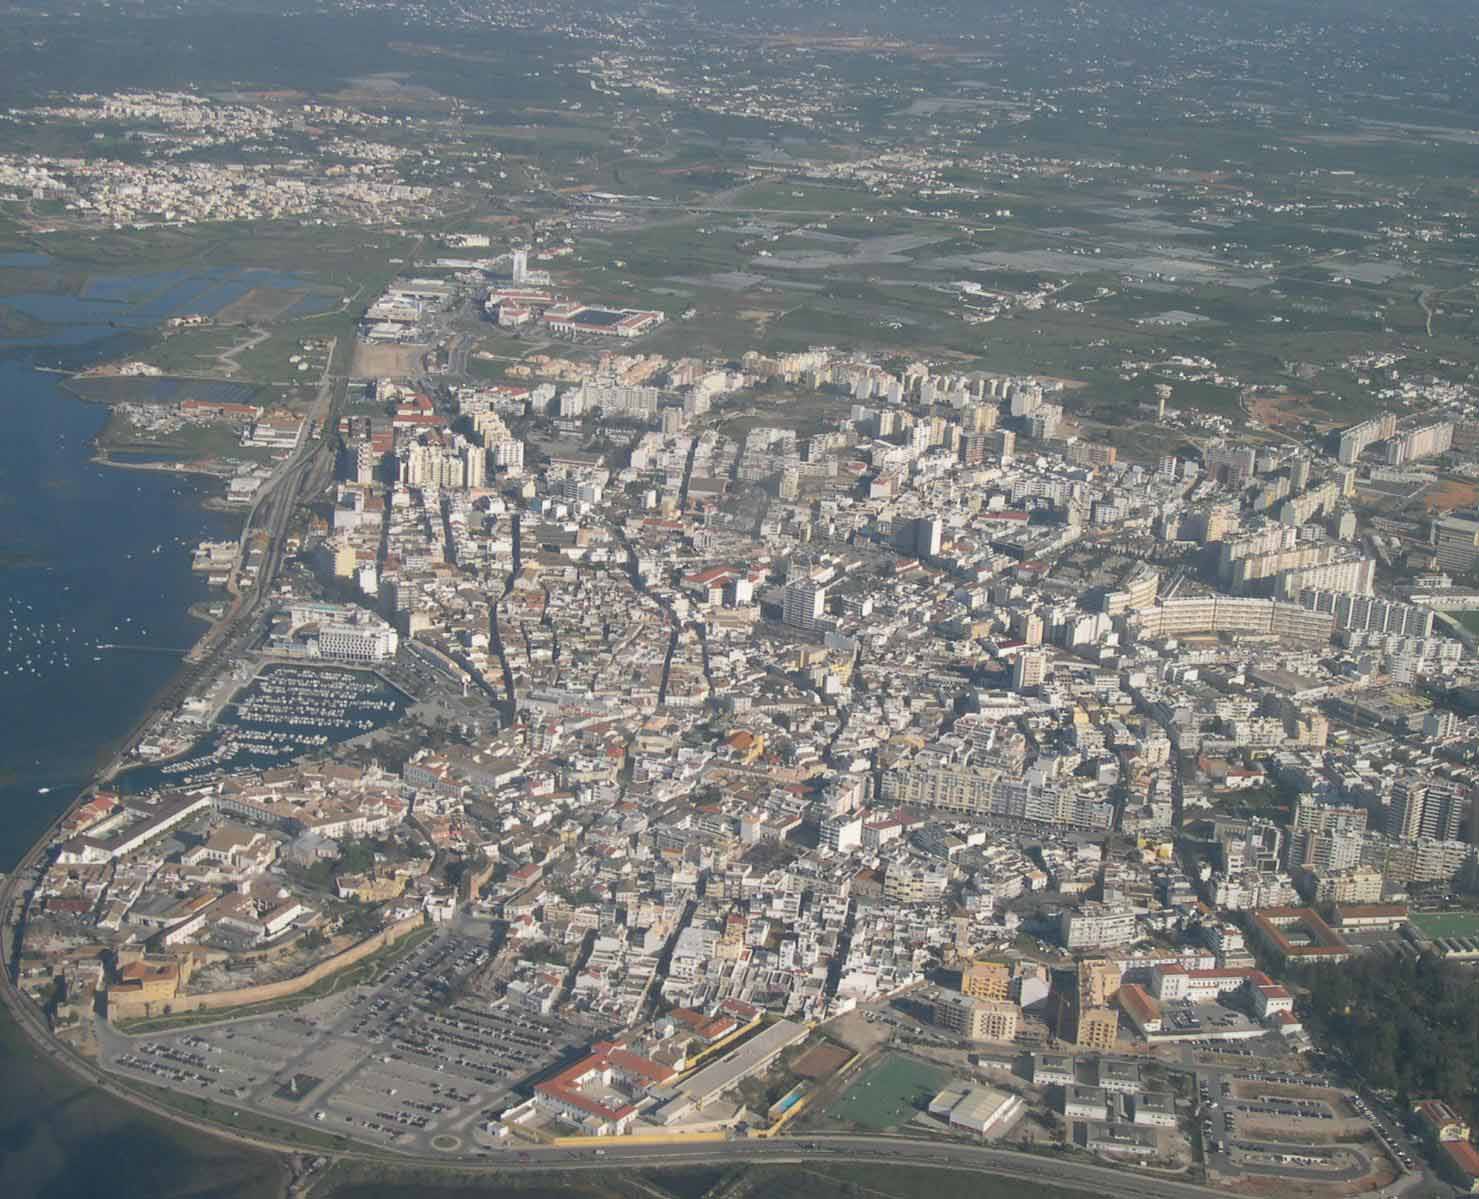 PAISAGEM PERIURBANA a interface agrícola do sistema urbano de Faro